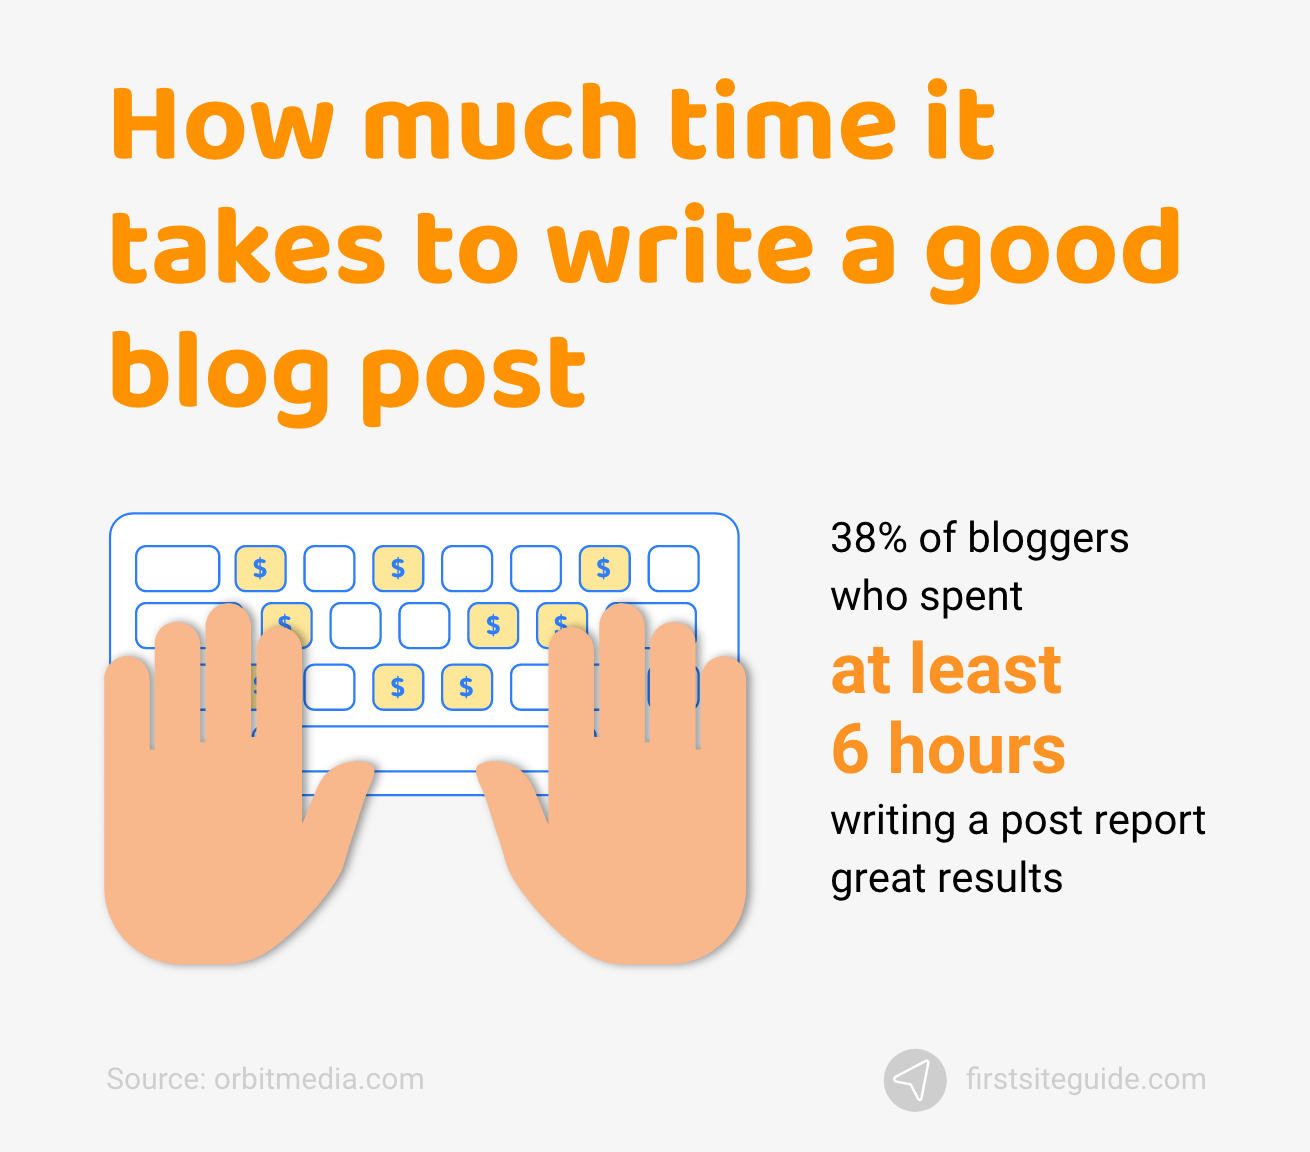 Berapa banyak waktu yang dibutuhkan untuk menulis posting blog yang bagus?